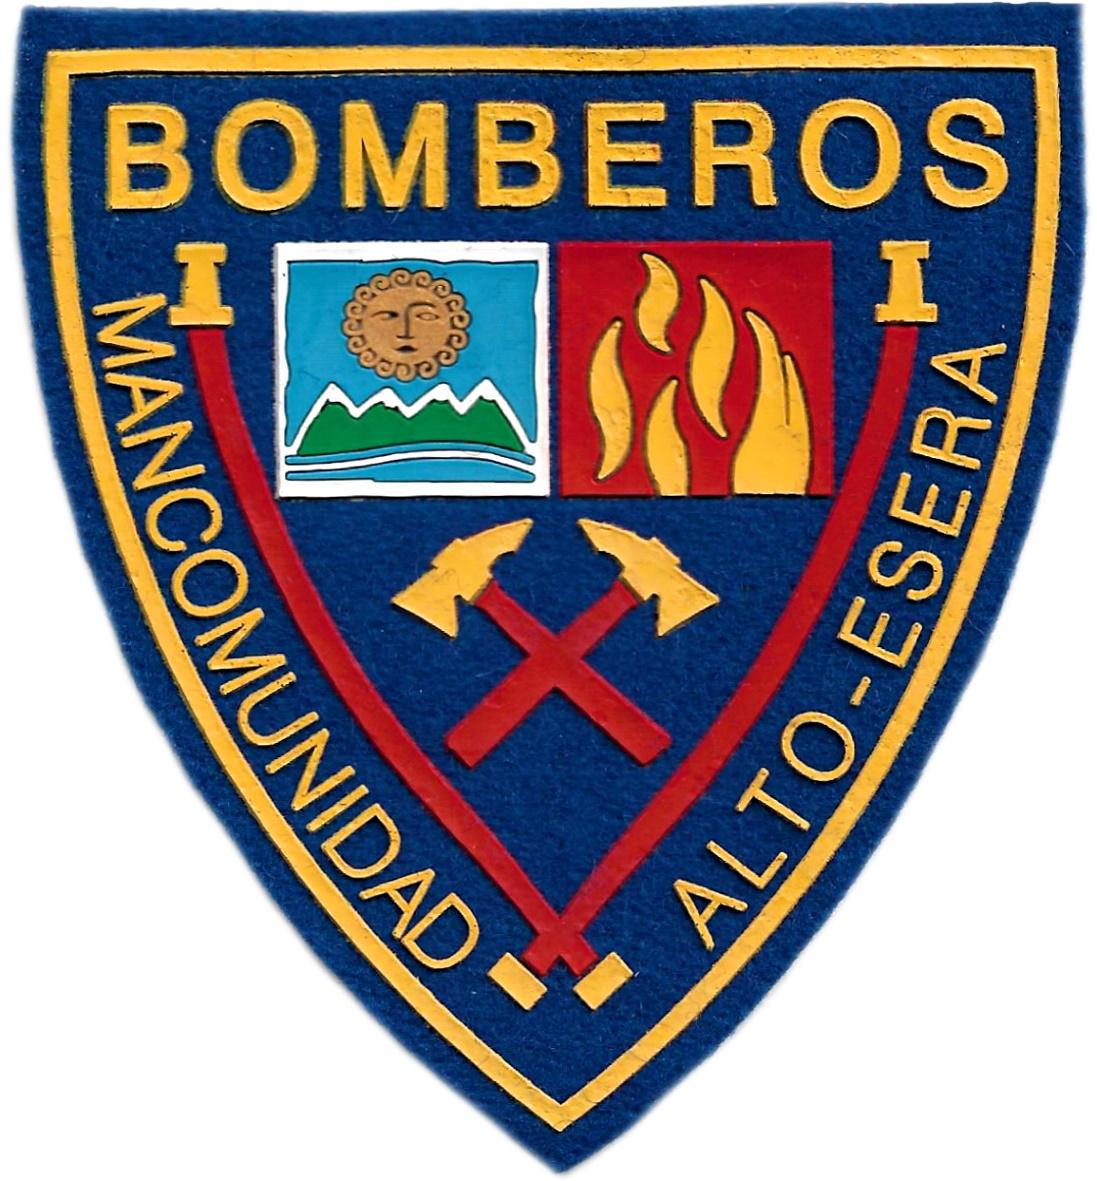 Bomberos de la mancomunidad del Alto Esera en Huesca parche insignia emblema distintivo